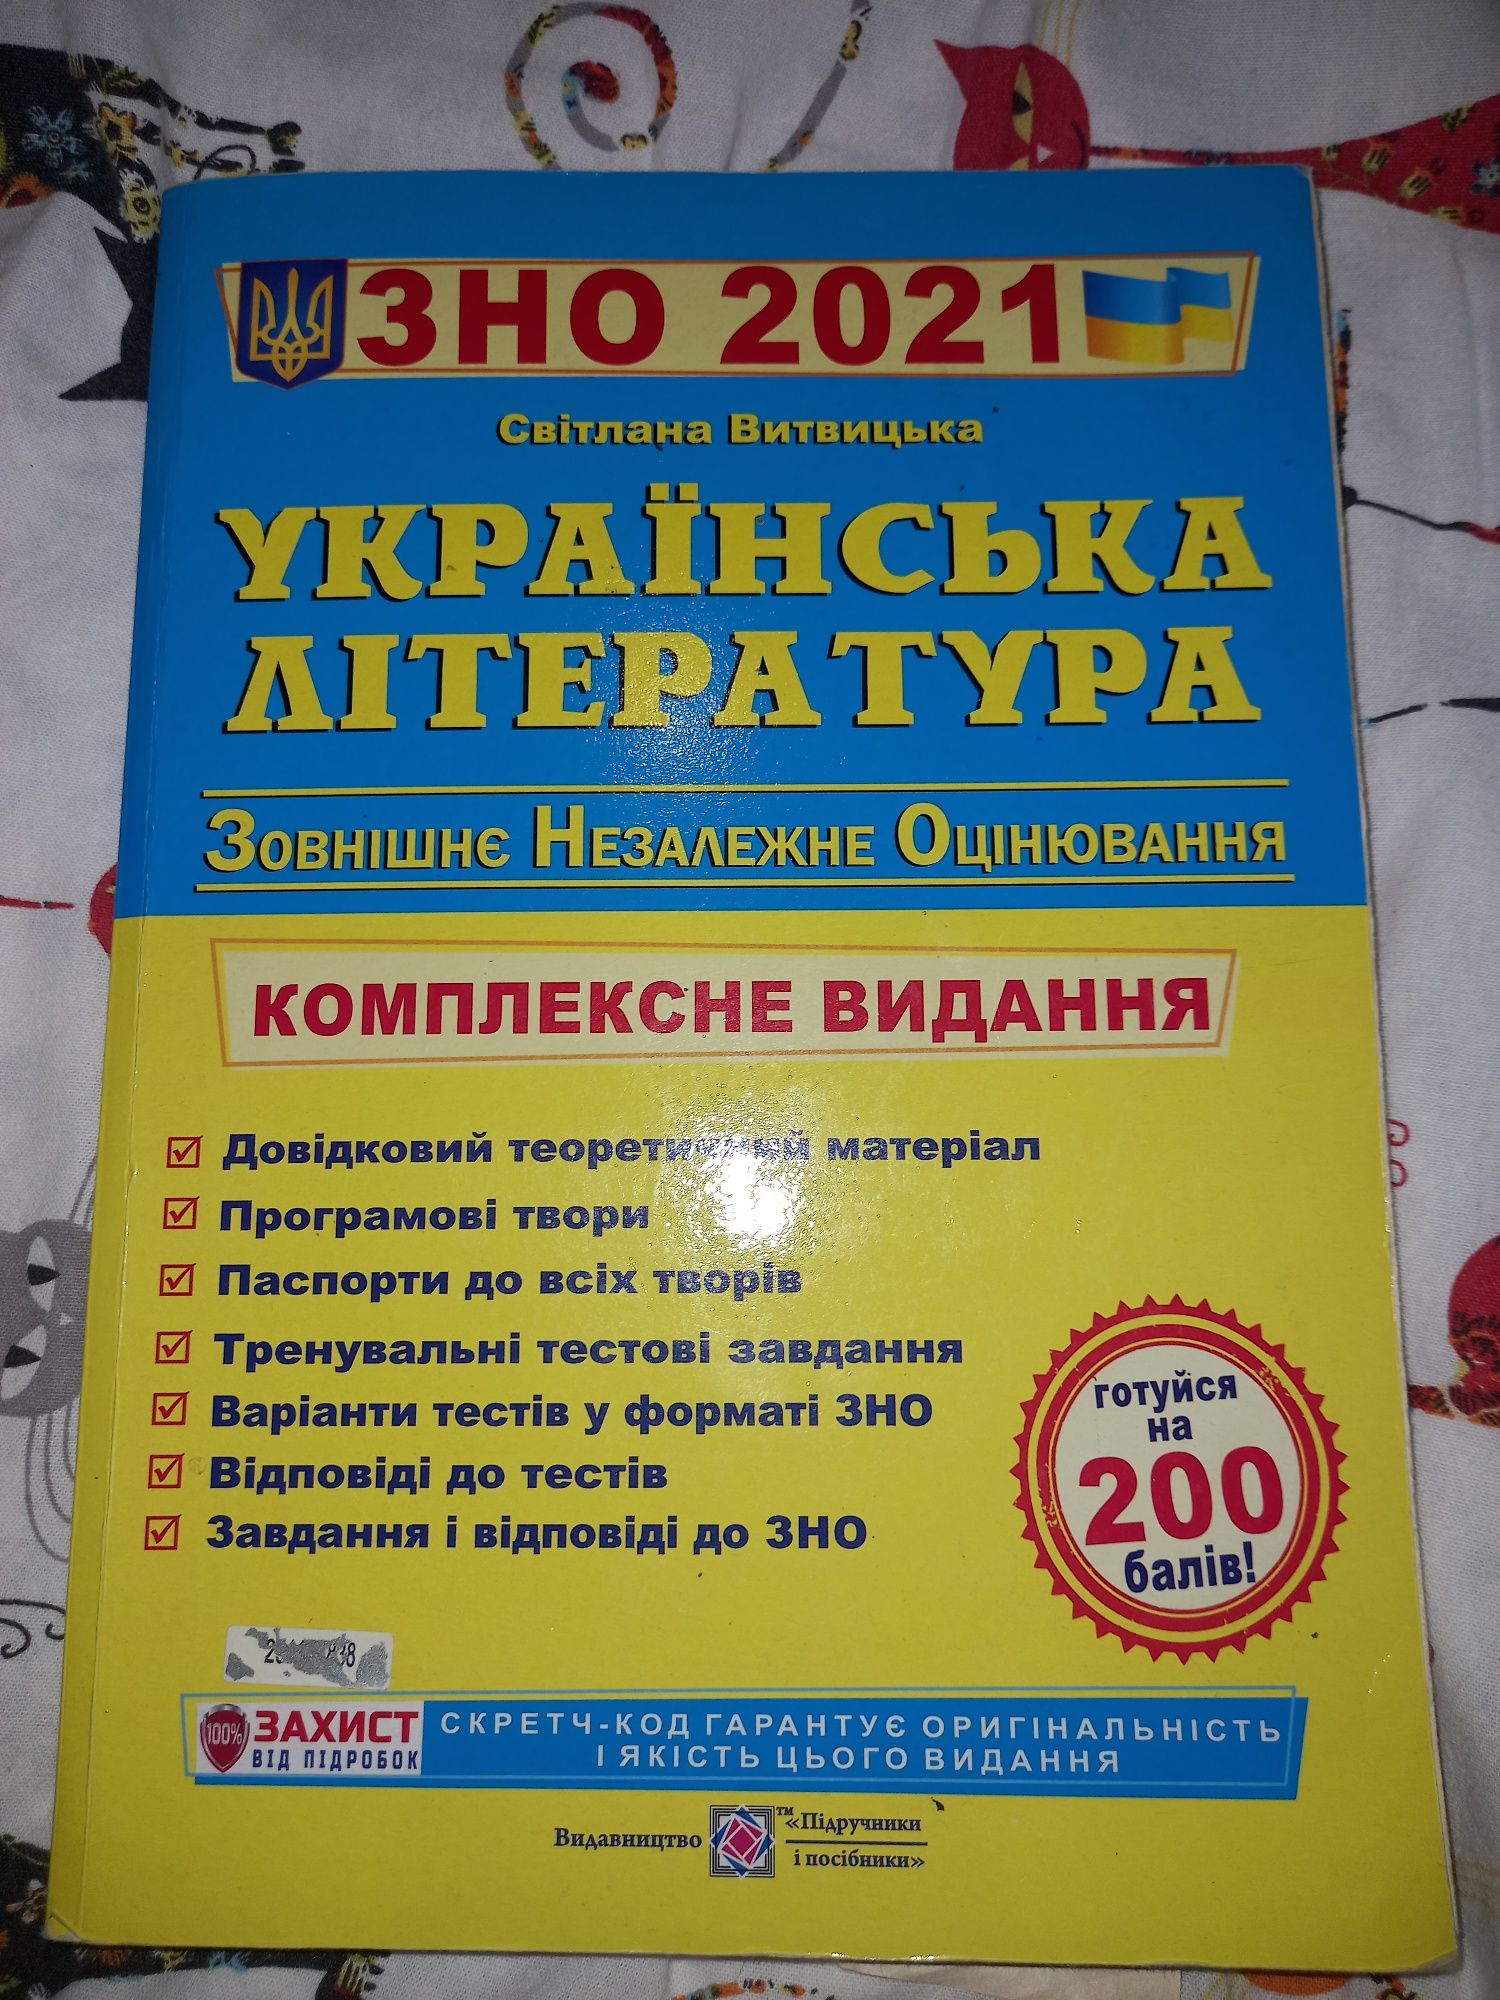 Підручник пілготовка до зно 2021 українська література, Витвицька